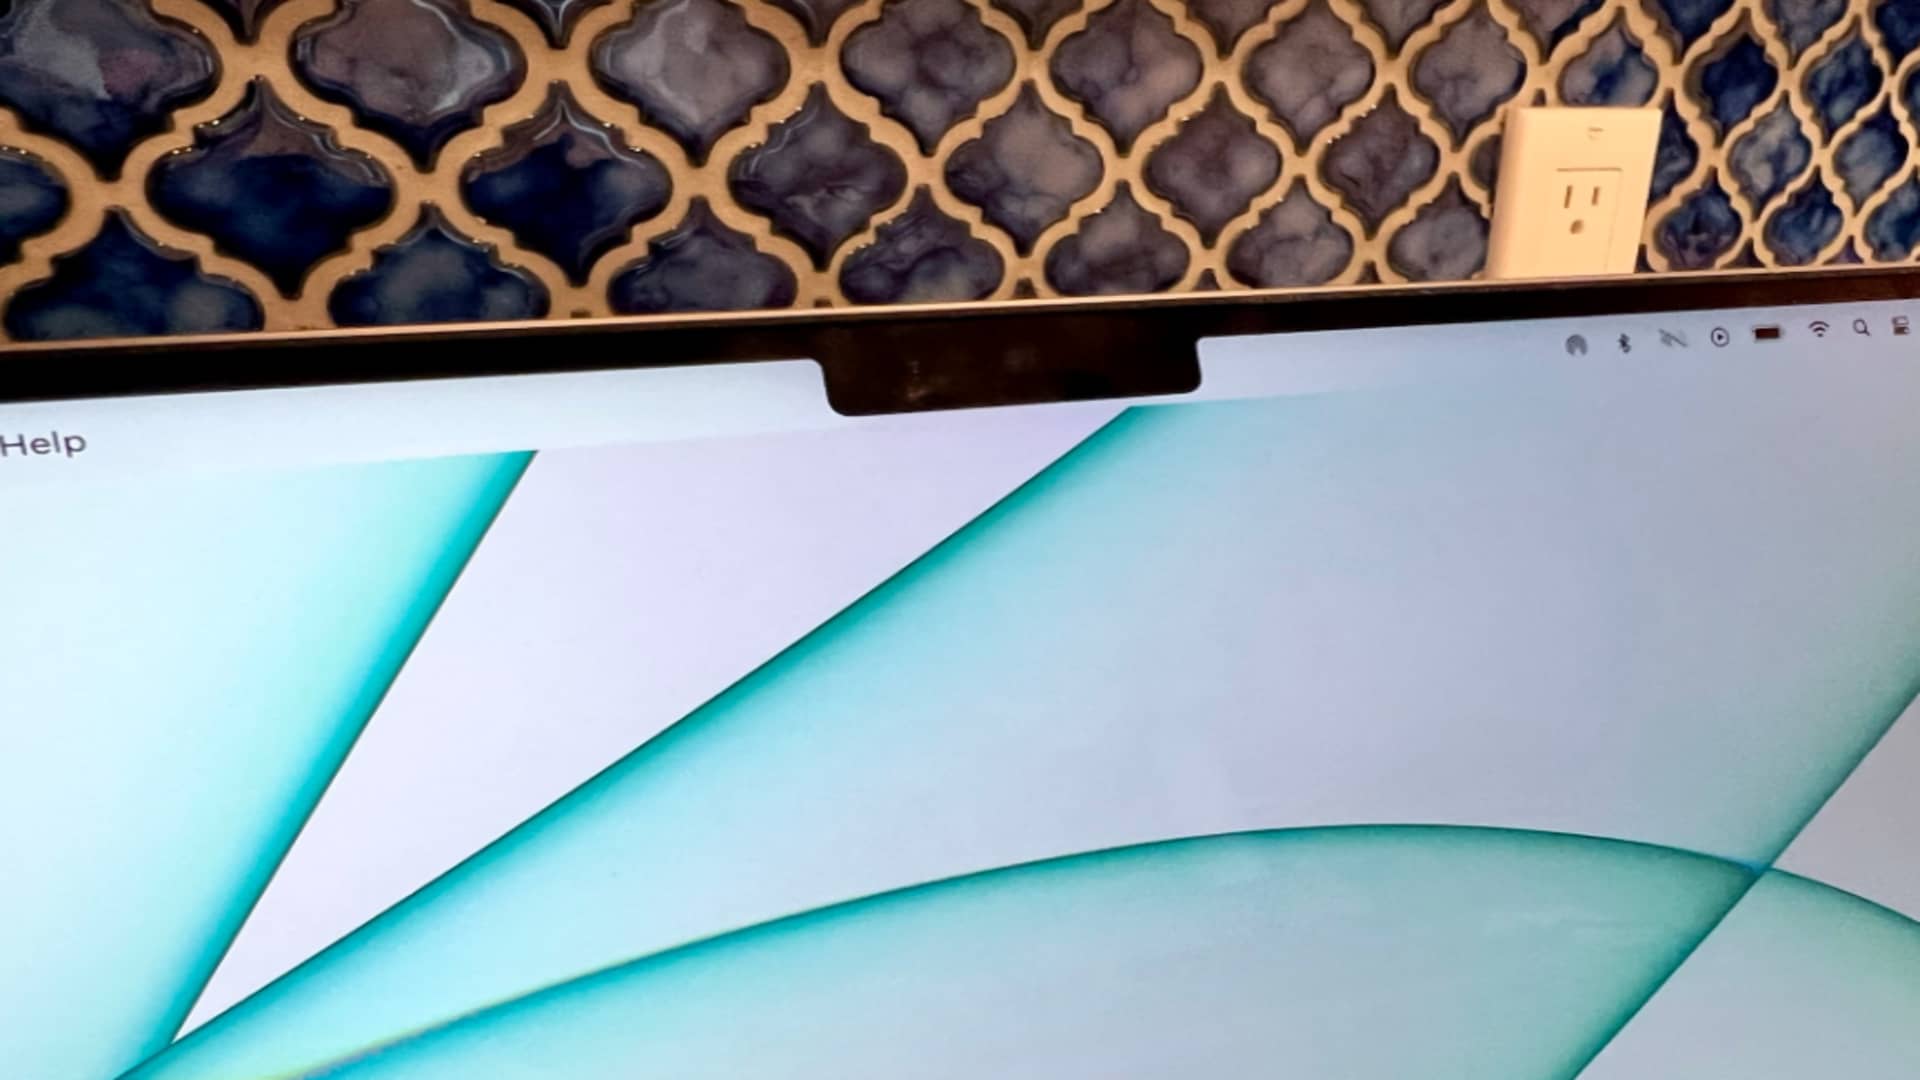 Apple's 14-inch MacBook Pro